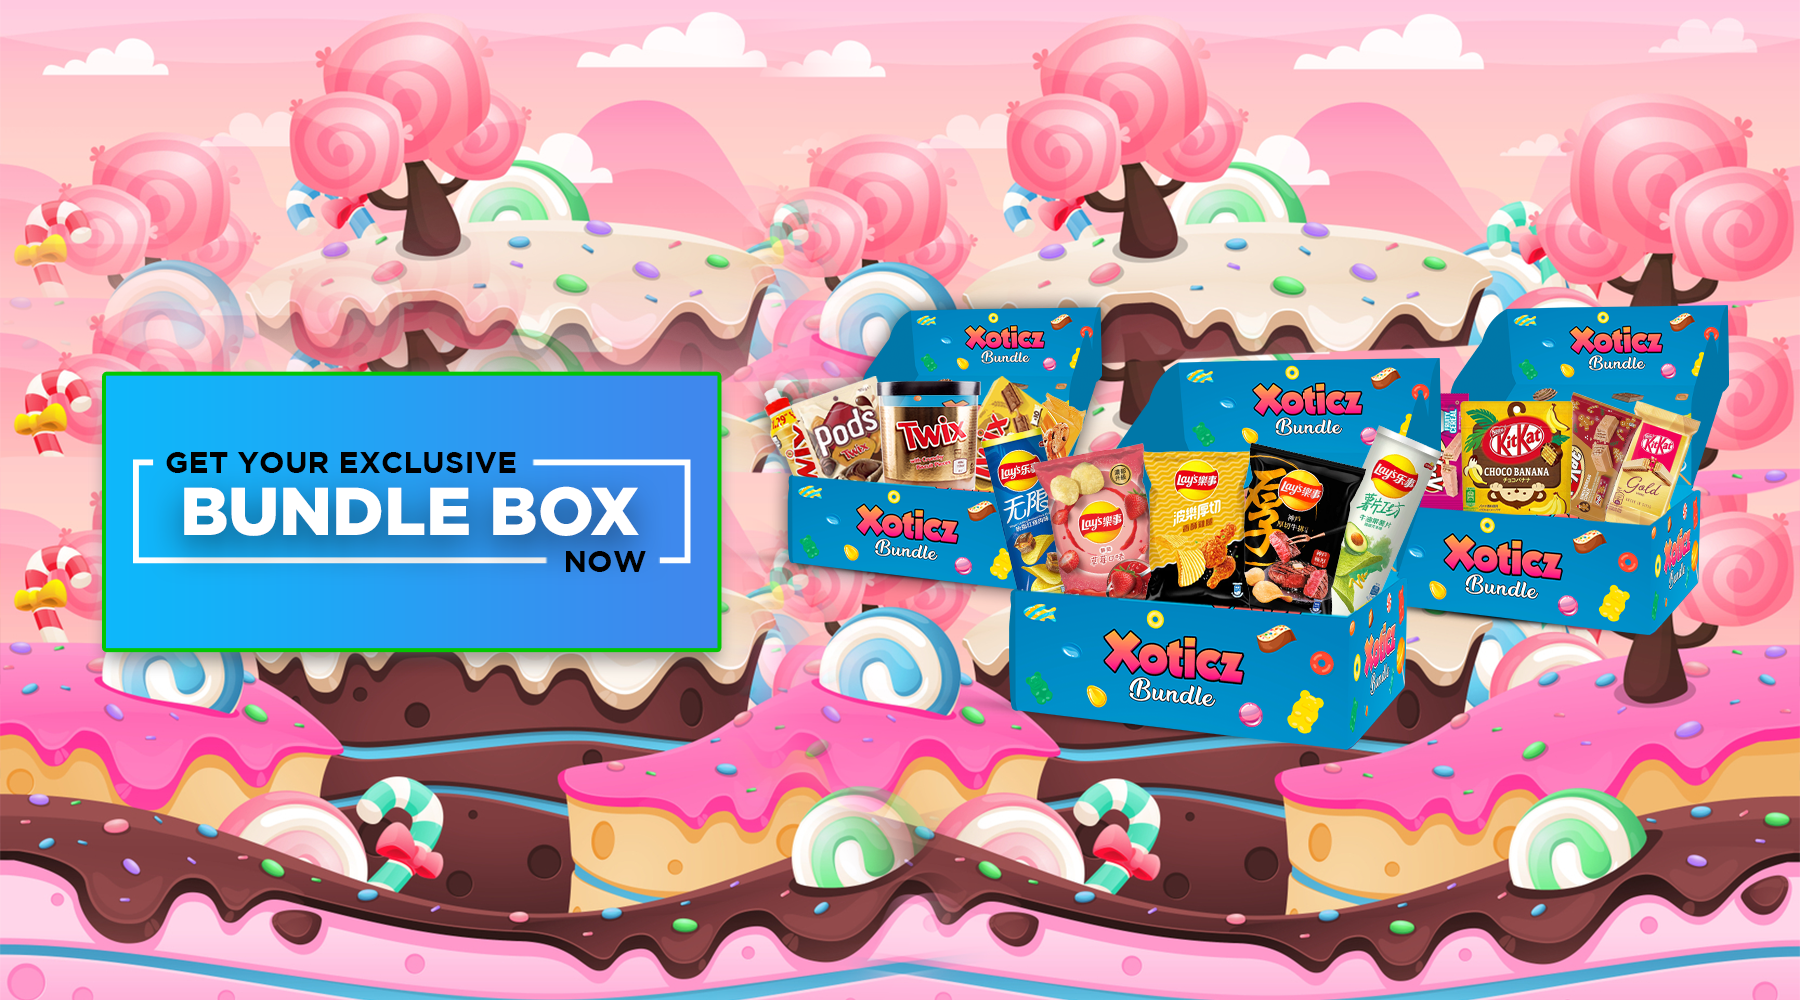 Candy Edition Mystery Box — Xotic Treatz